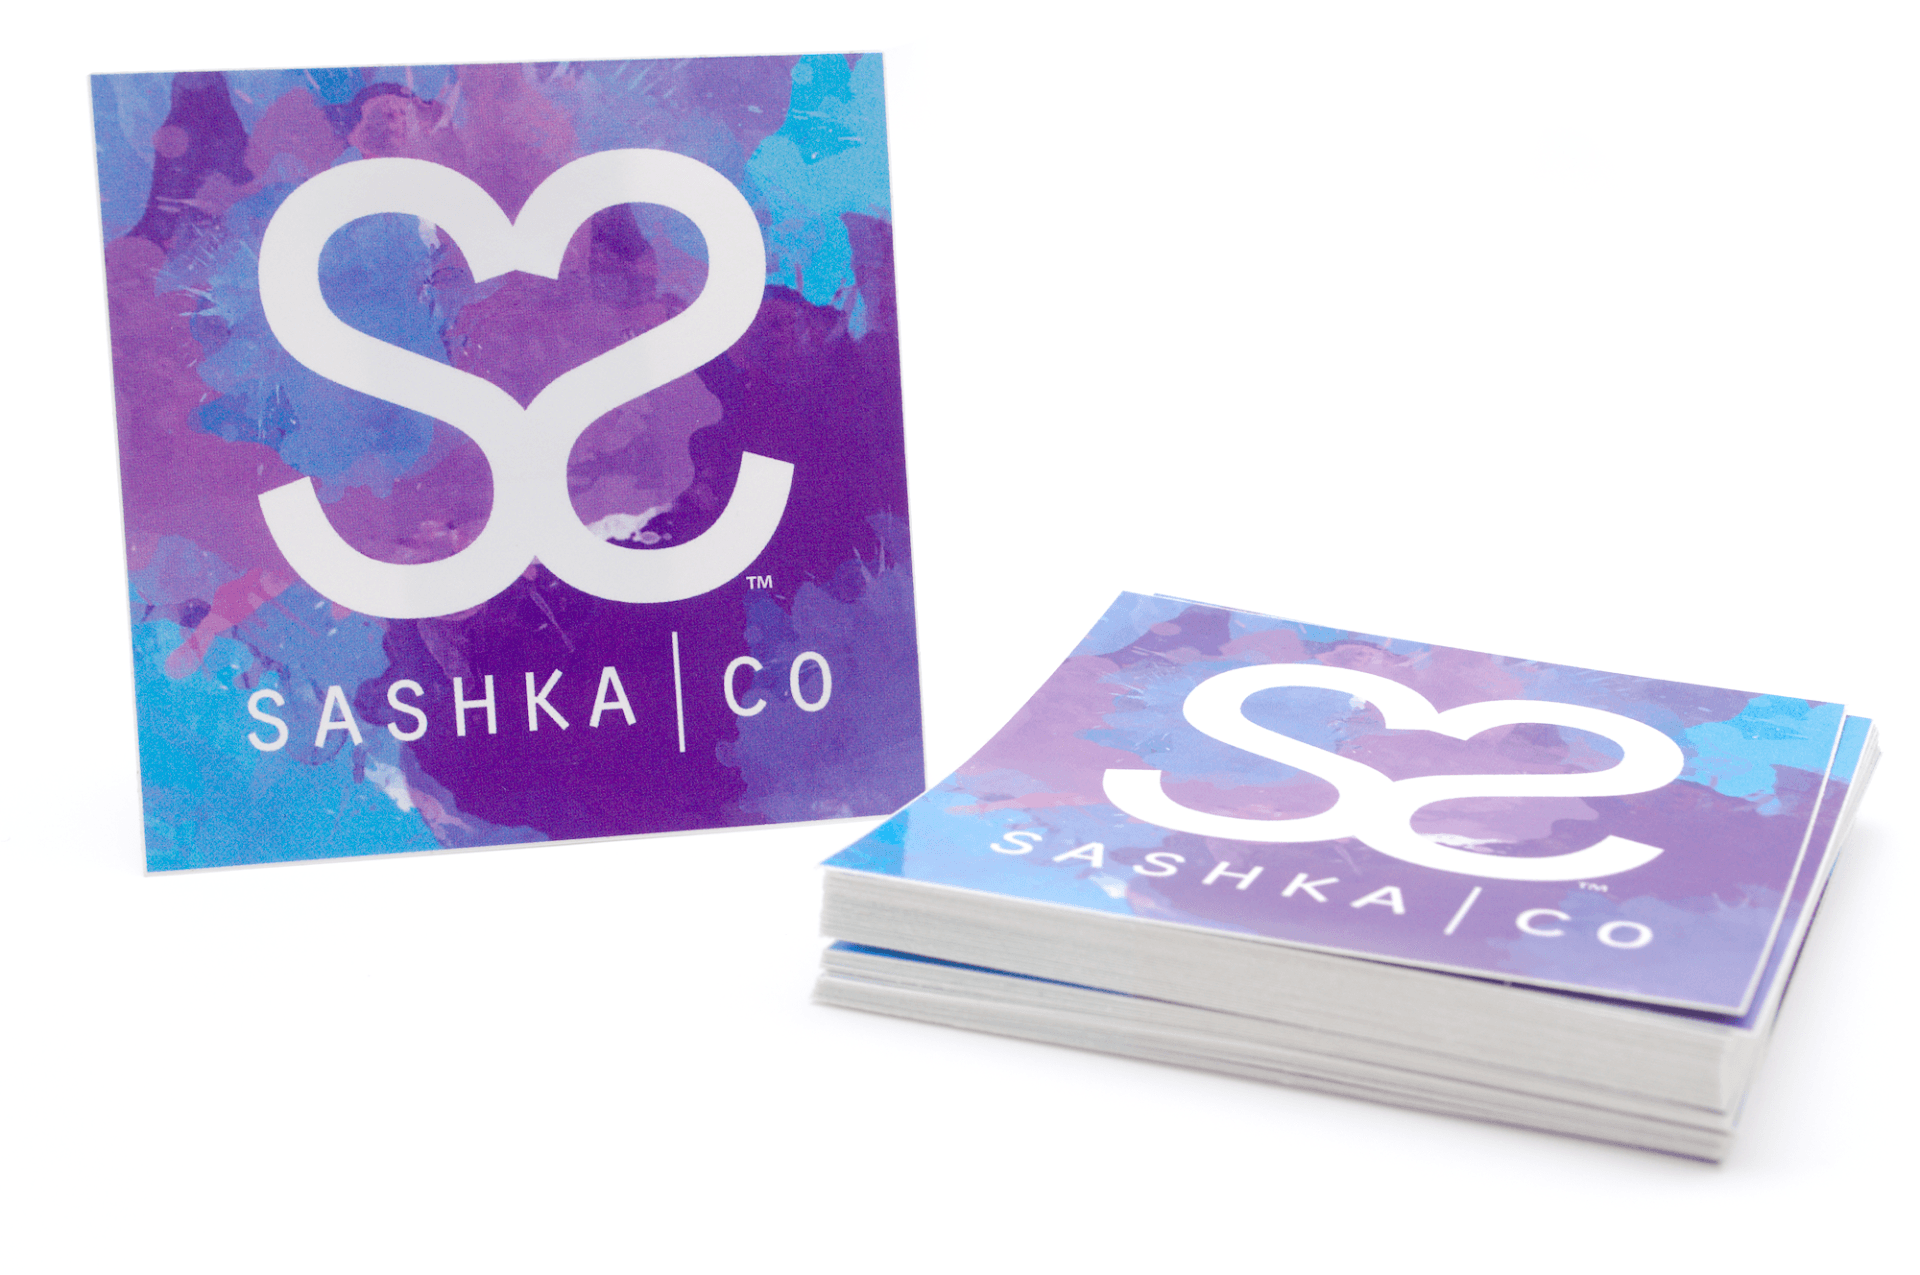 Sashka Co. Extended 8" Bracelet Turquoise / Gold / Pink / Purple / White Boardwalk Bracelet - Extended 8"